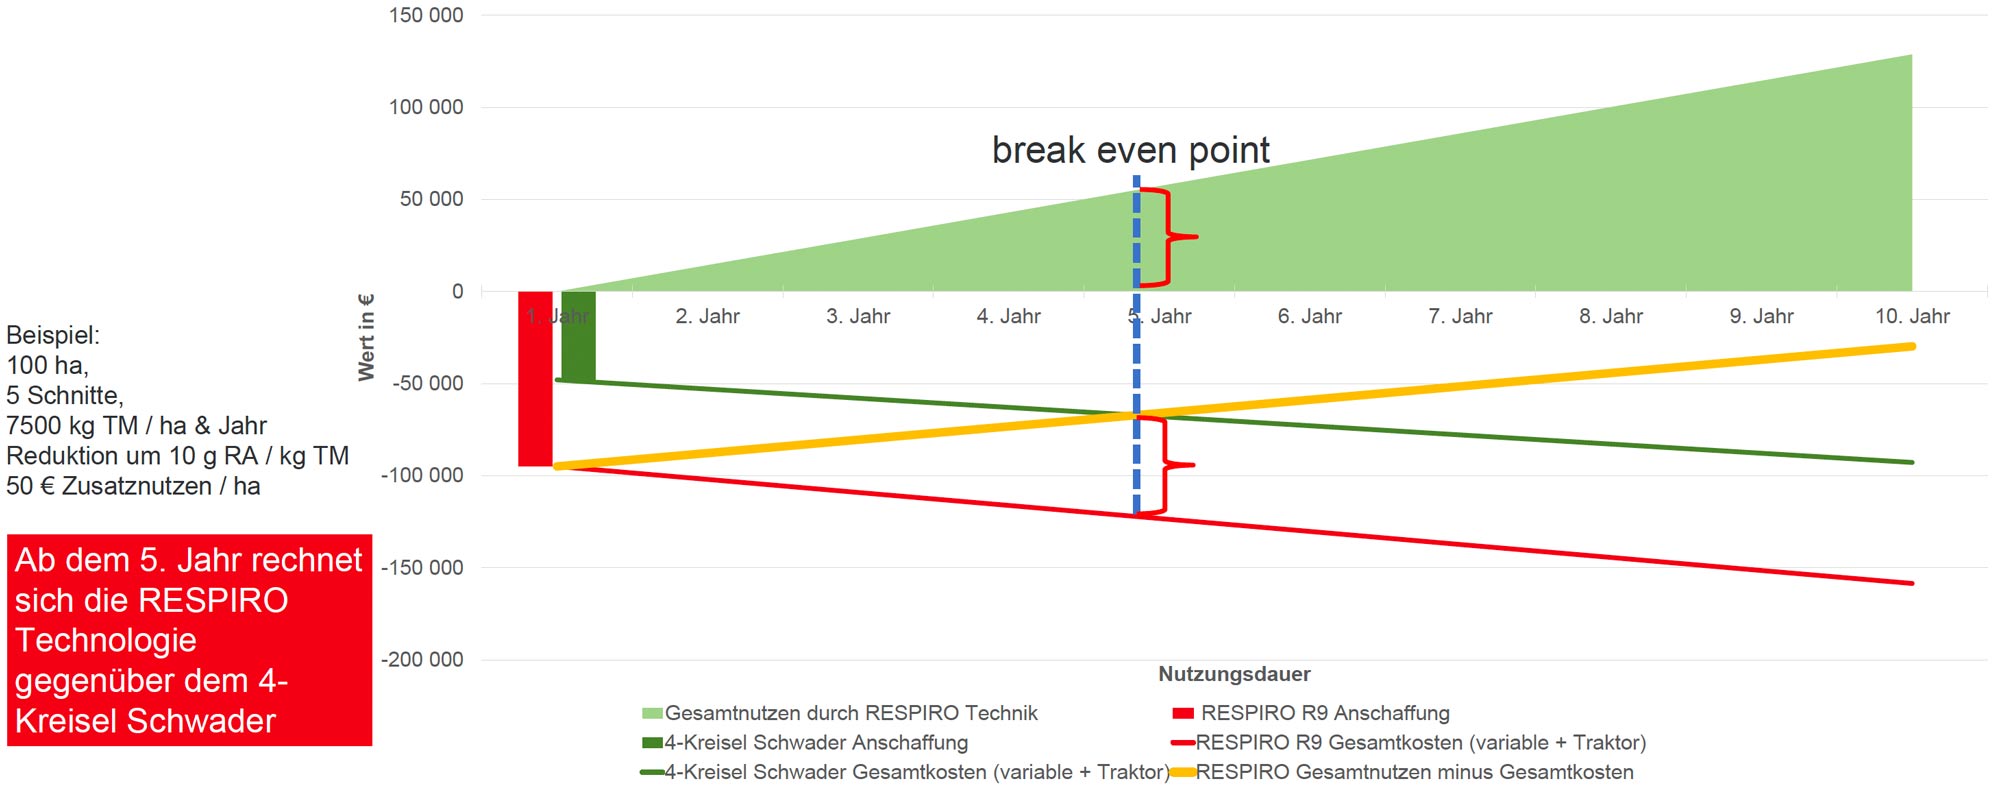 Reiter RESPIRO: Break Even Point Berechnung